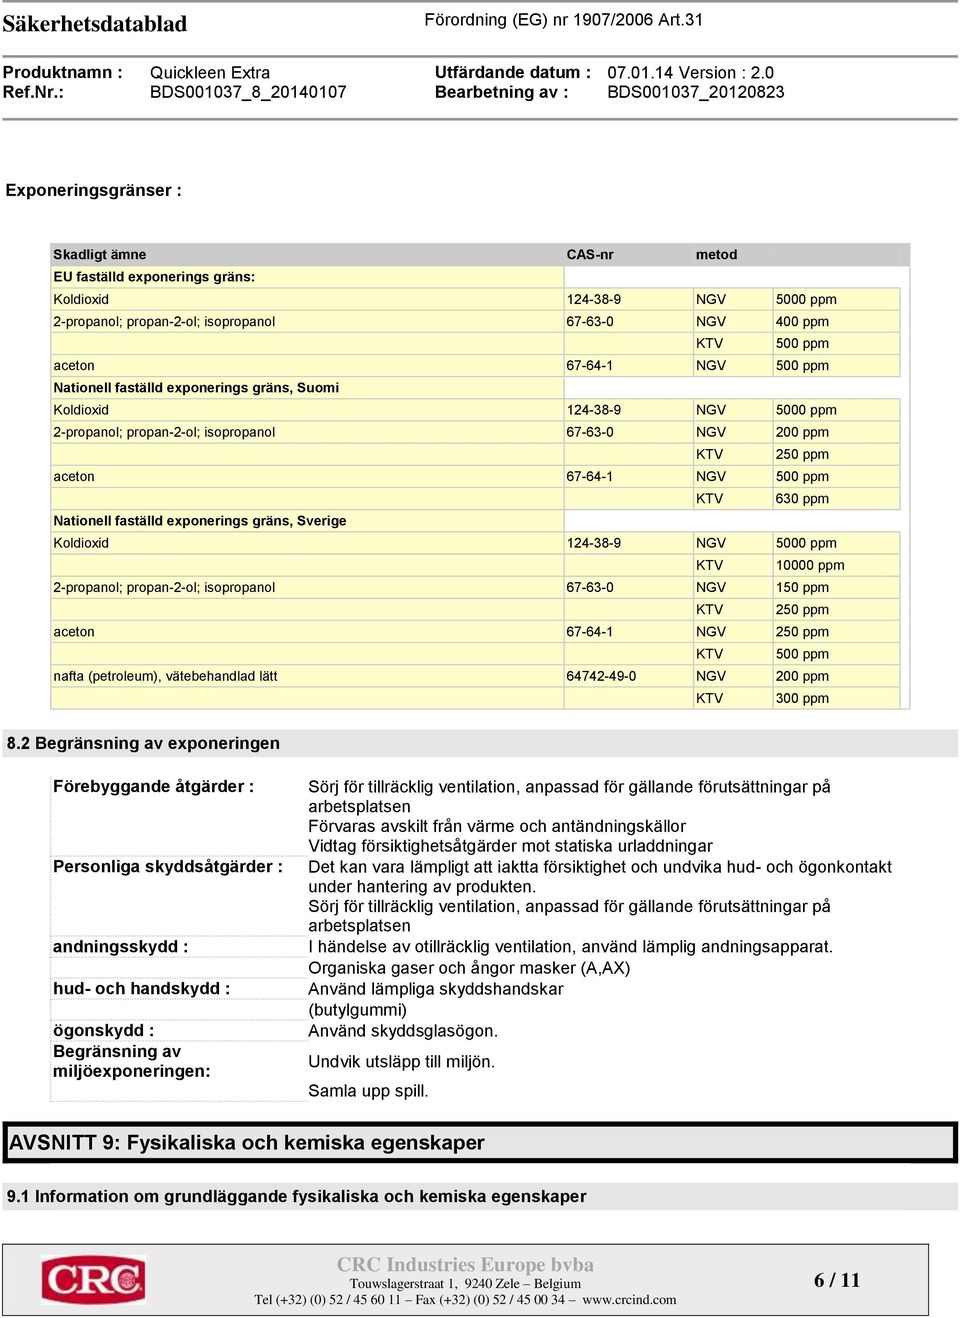 Nationell faställd exponerings gräns, Sverige Koldioxid 124-38-9 NGV 5000 ppm KTV 10000 ppm 2-propanol; propan-2-ol; isopropanol 67-63-0 NGV 150 ppm KTV 250 ppm aceton 67-64-1 NGV 250 ppm KTV 500 ppm